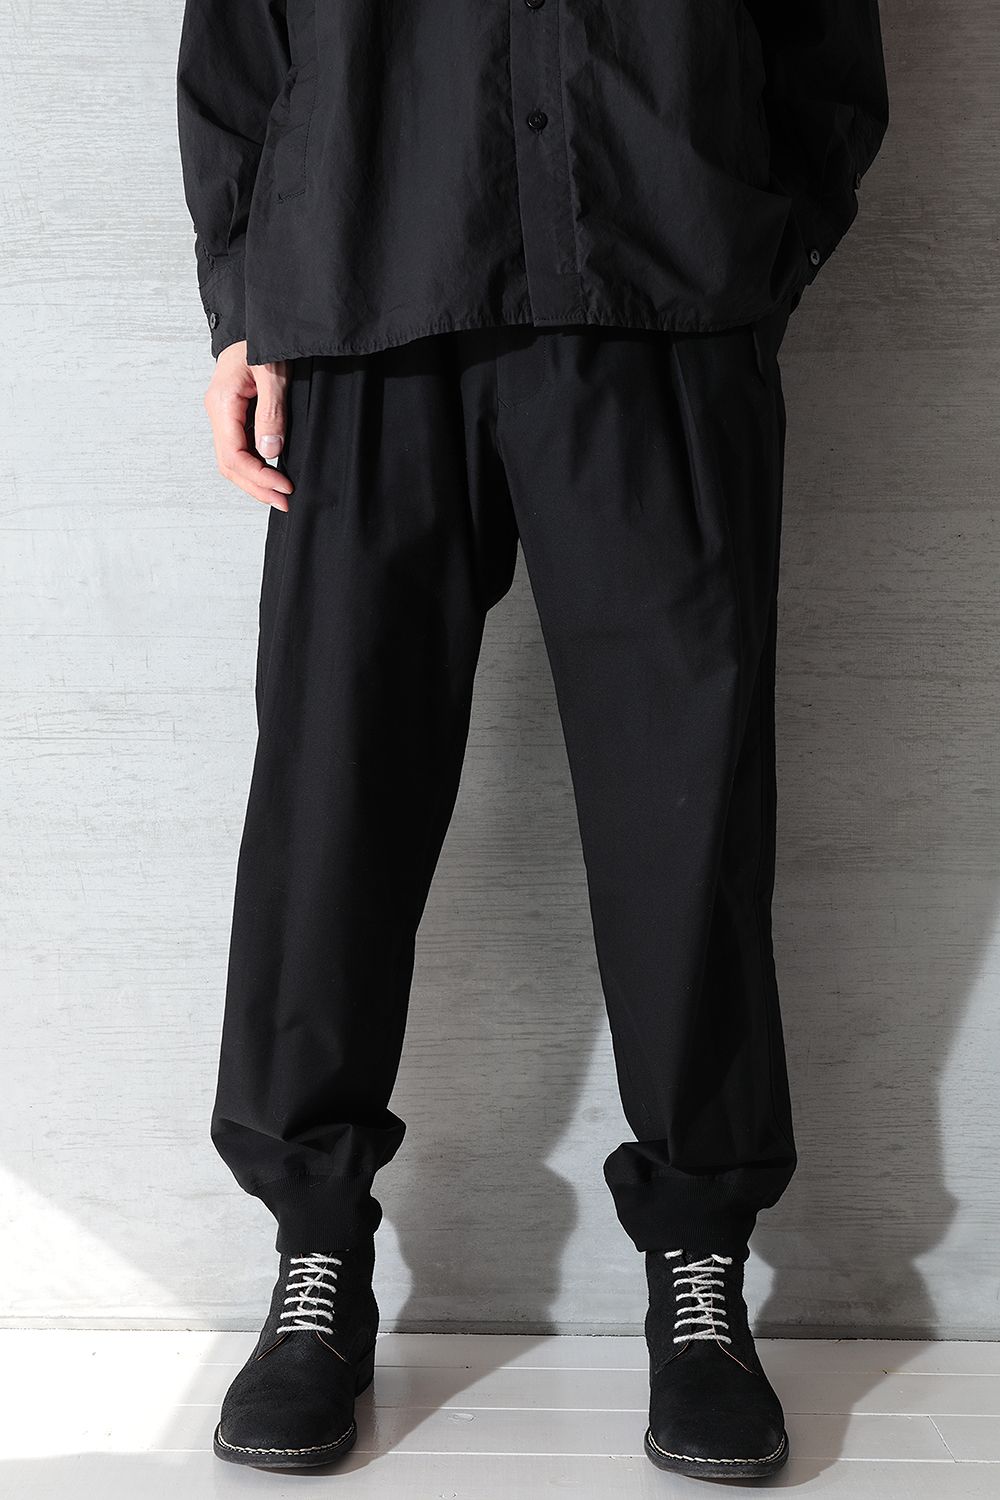 Yohji Yamamoto 21SS イージーパンツ 裾リブパンツ